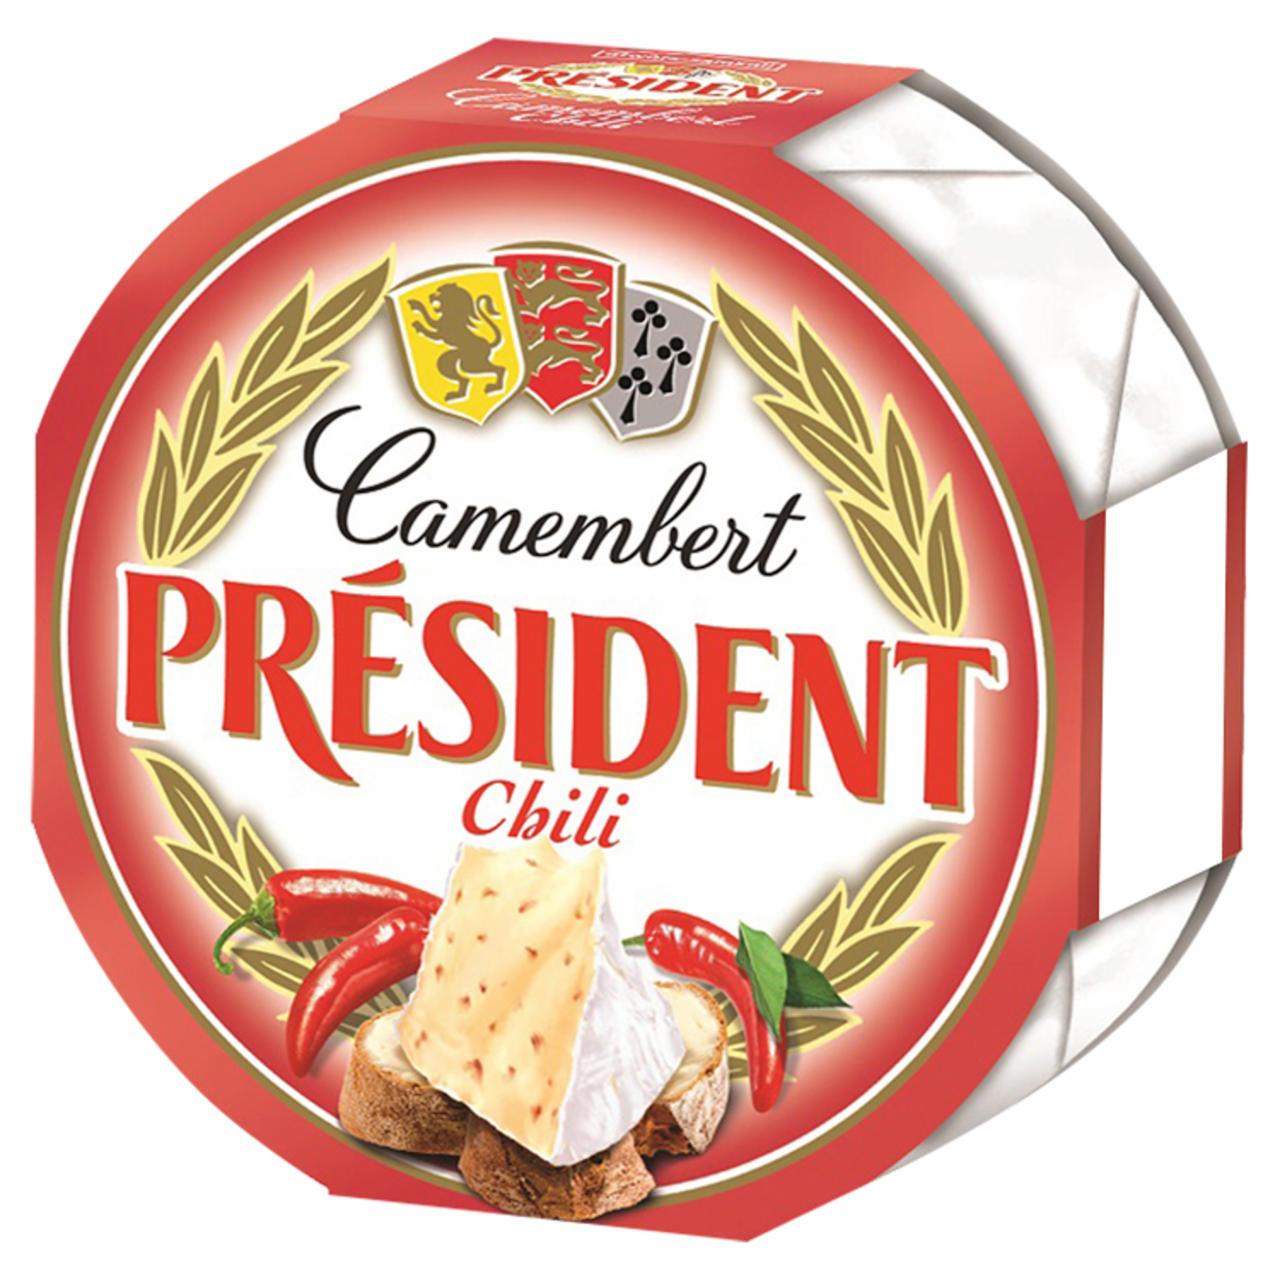 Képek - Président Camembert chilis zsírdús lágy sajt 120 g